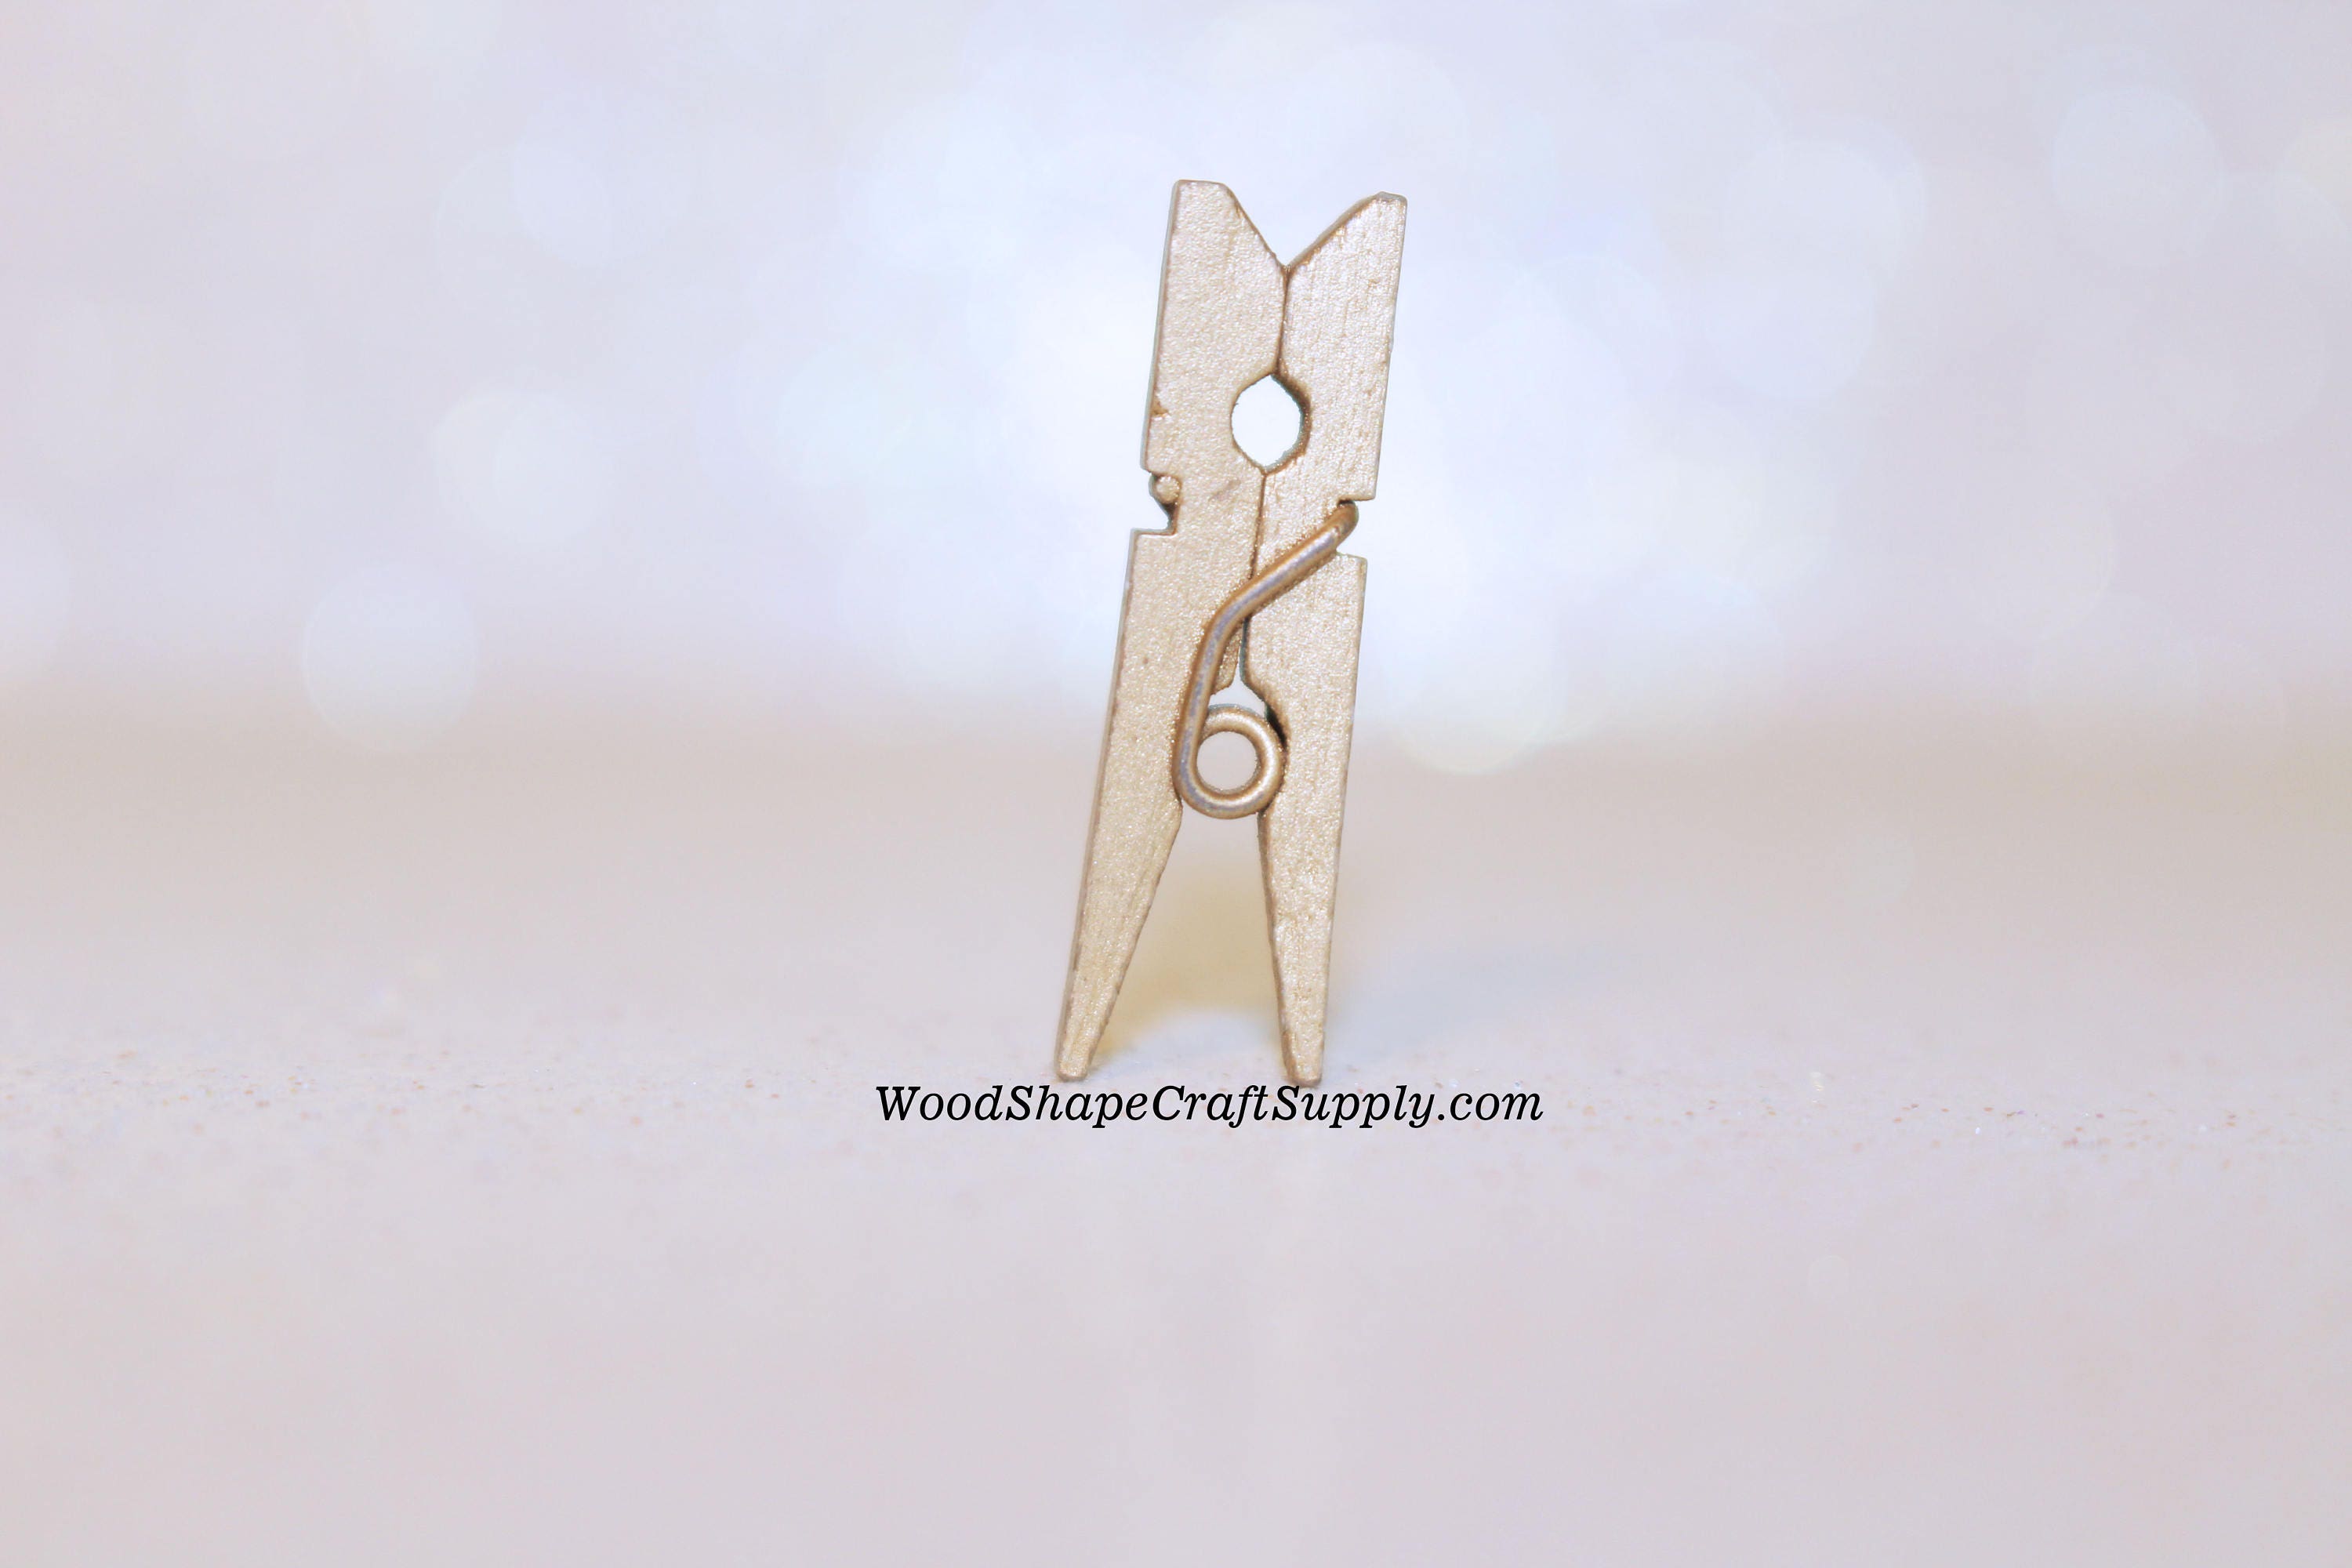  NOLITOY 30pcs Mini Clothespins Small Clothes Pin Craft